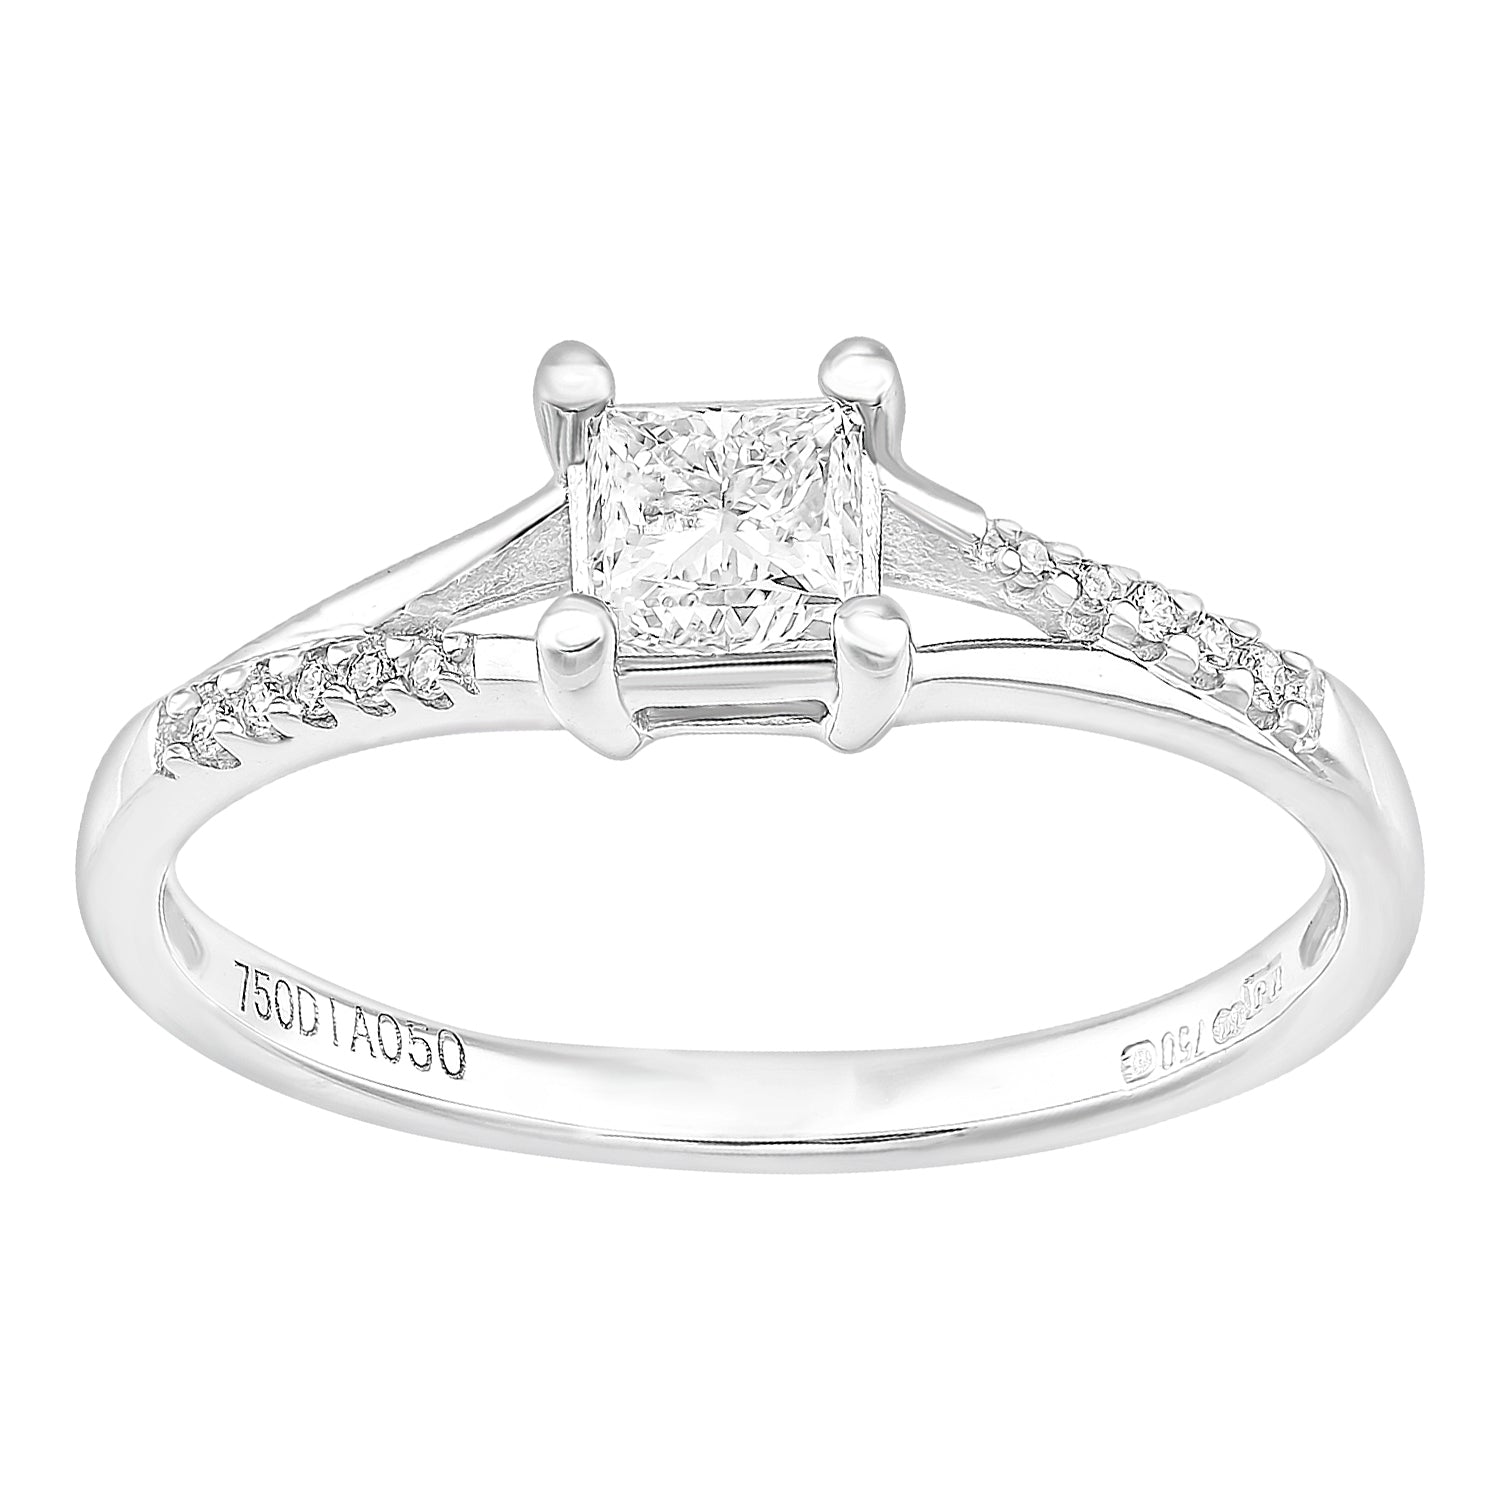 18ct White Gold  Princess Diamond Diamond Pave Solitaire Ring - PR1AXL2327W18